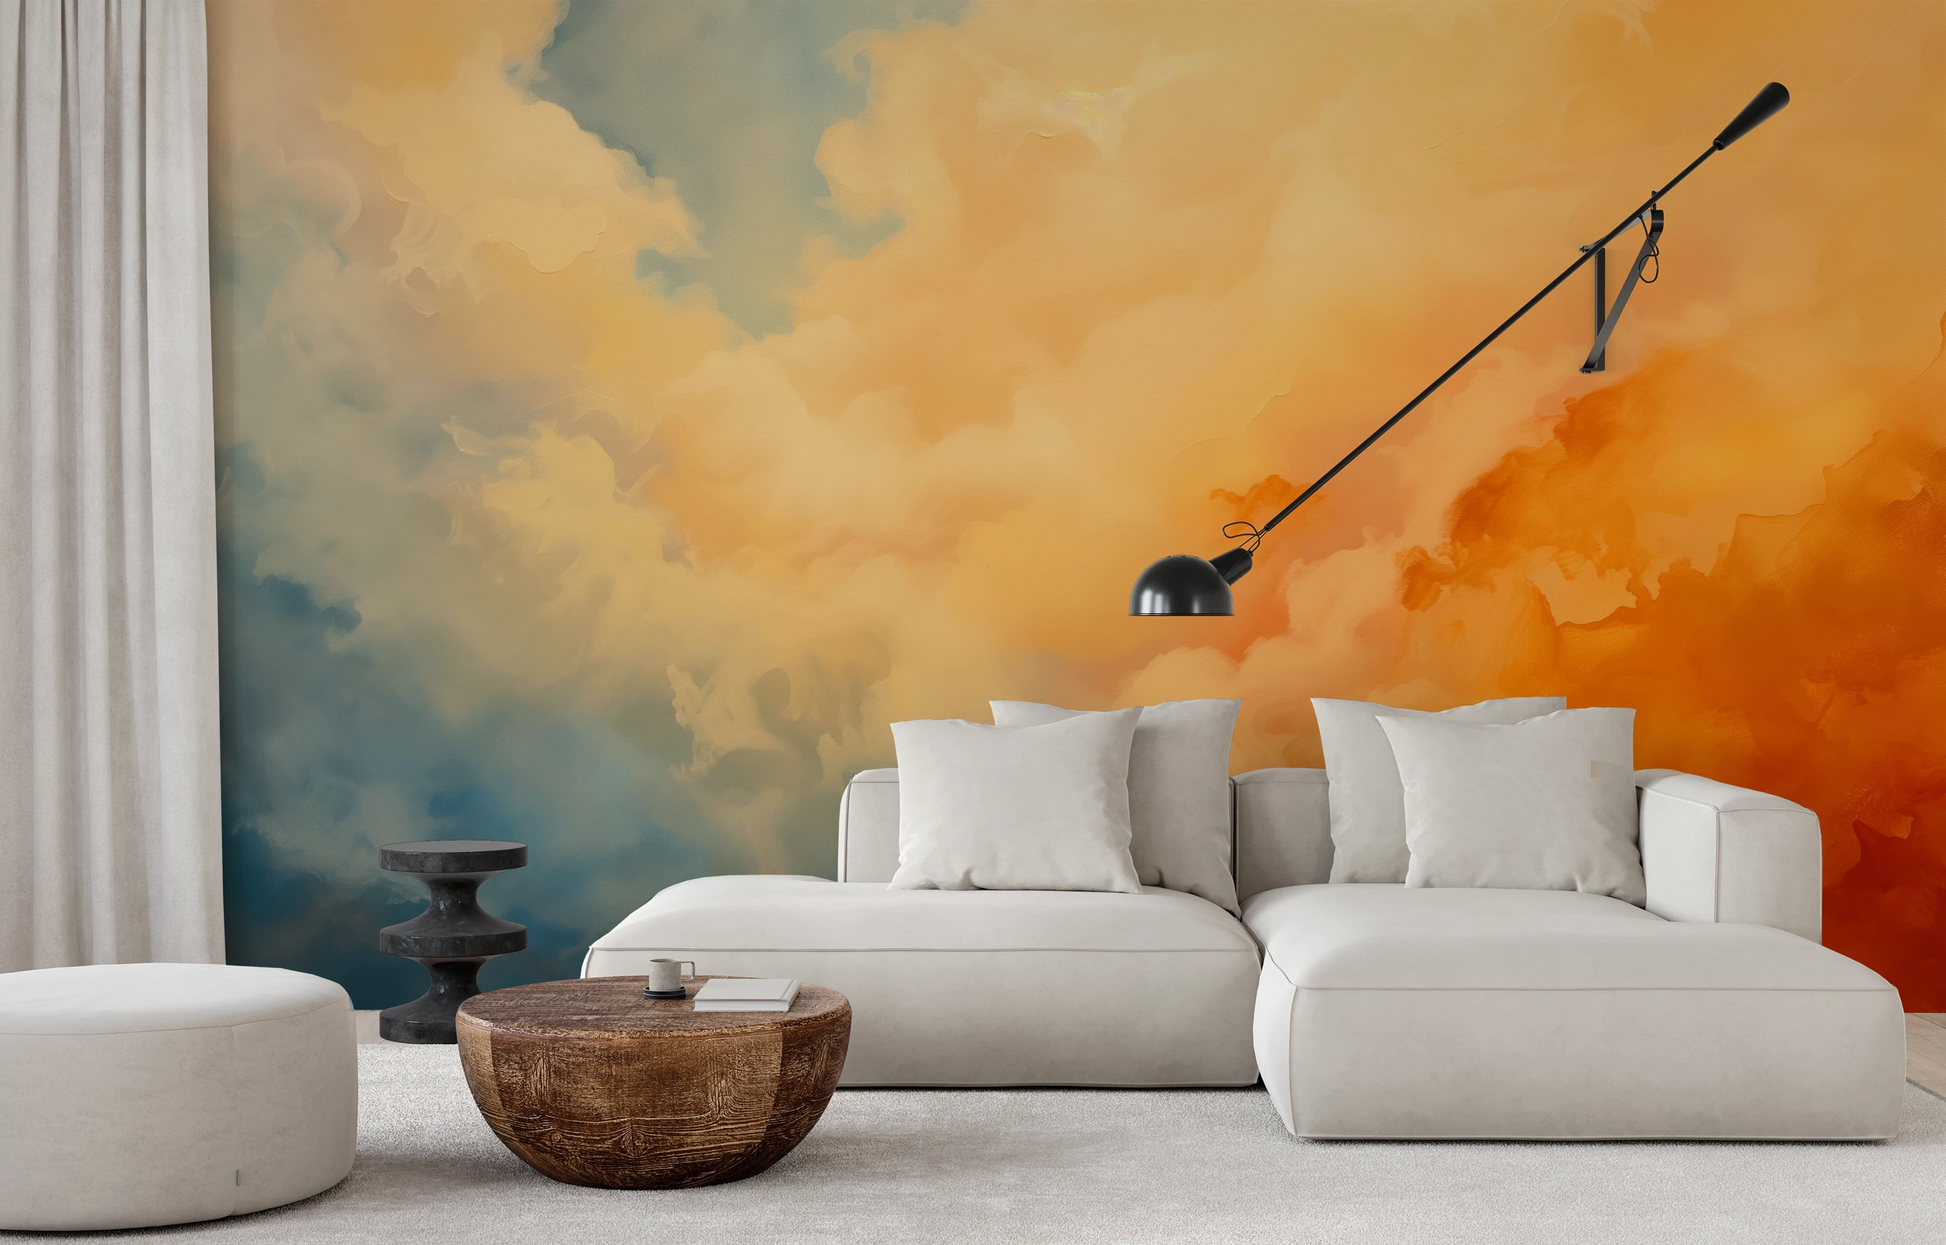 Fototapeta malowana o nazwie Sunset Mirage pokazana w aranżacji wnętrza.